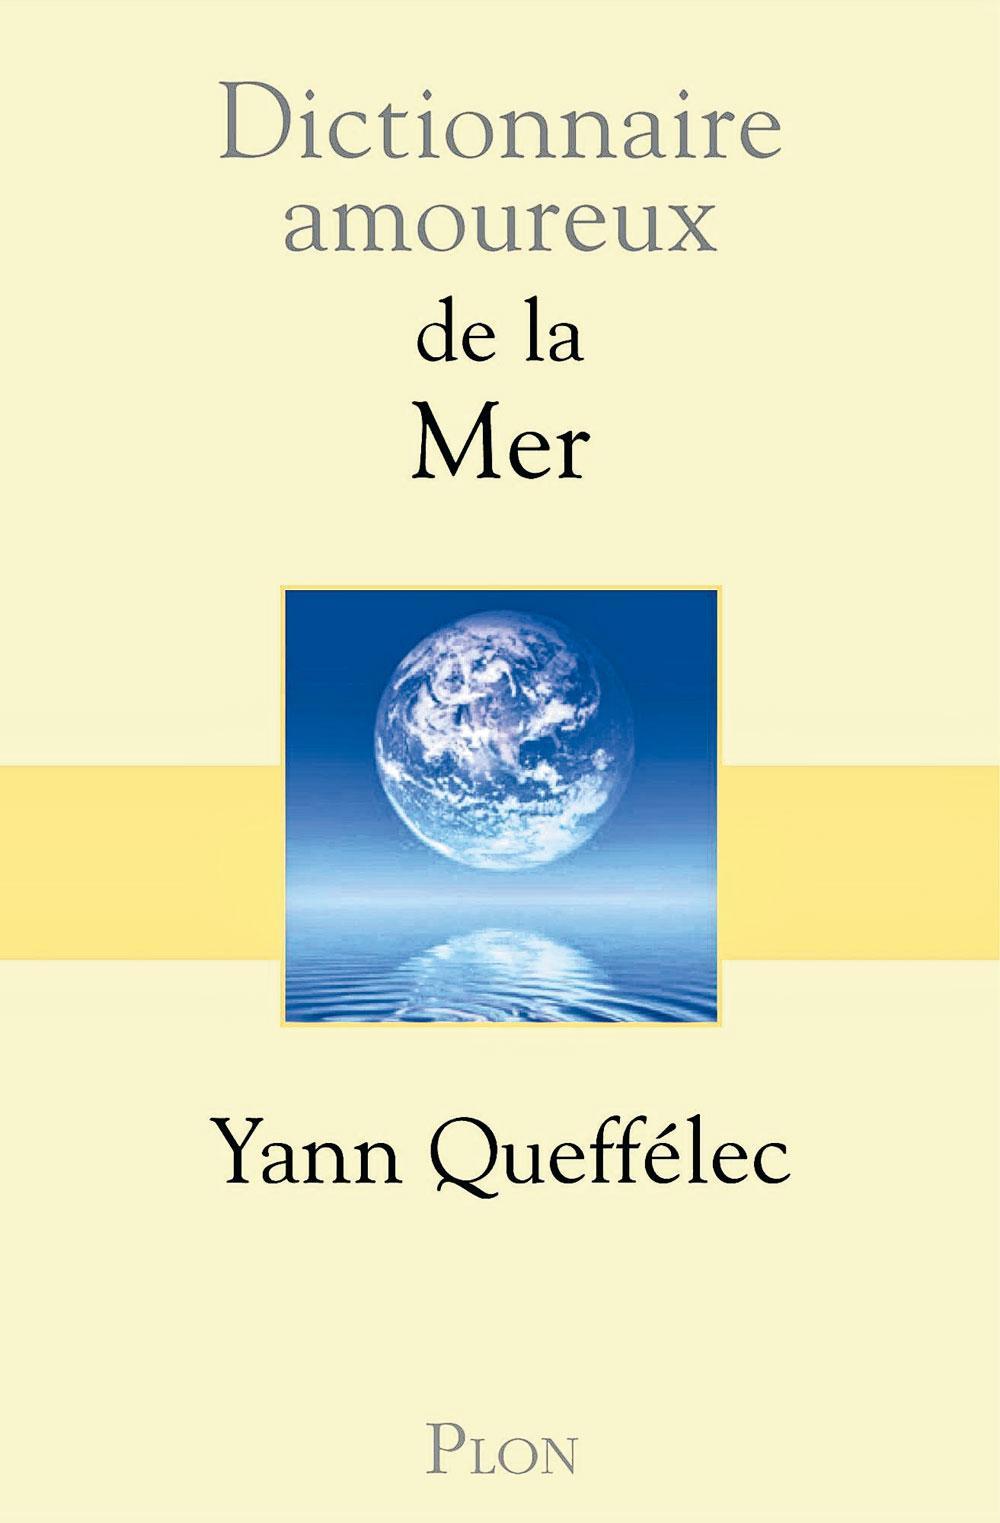 Dictionnaire amoureux de la mer, par Yann Queffélec, Plon, 672 p.